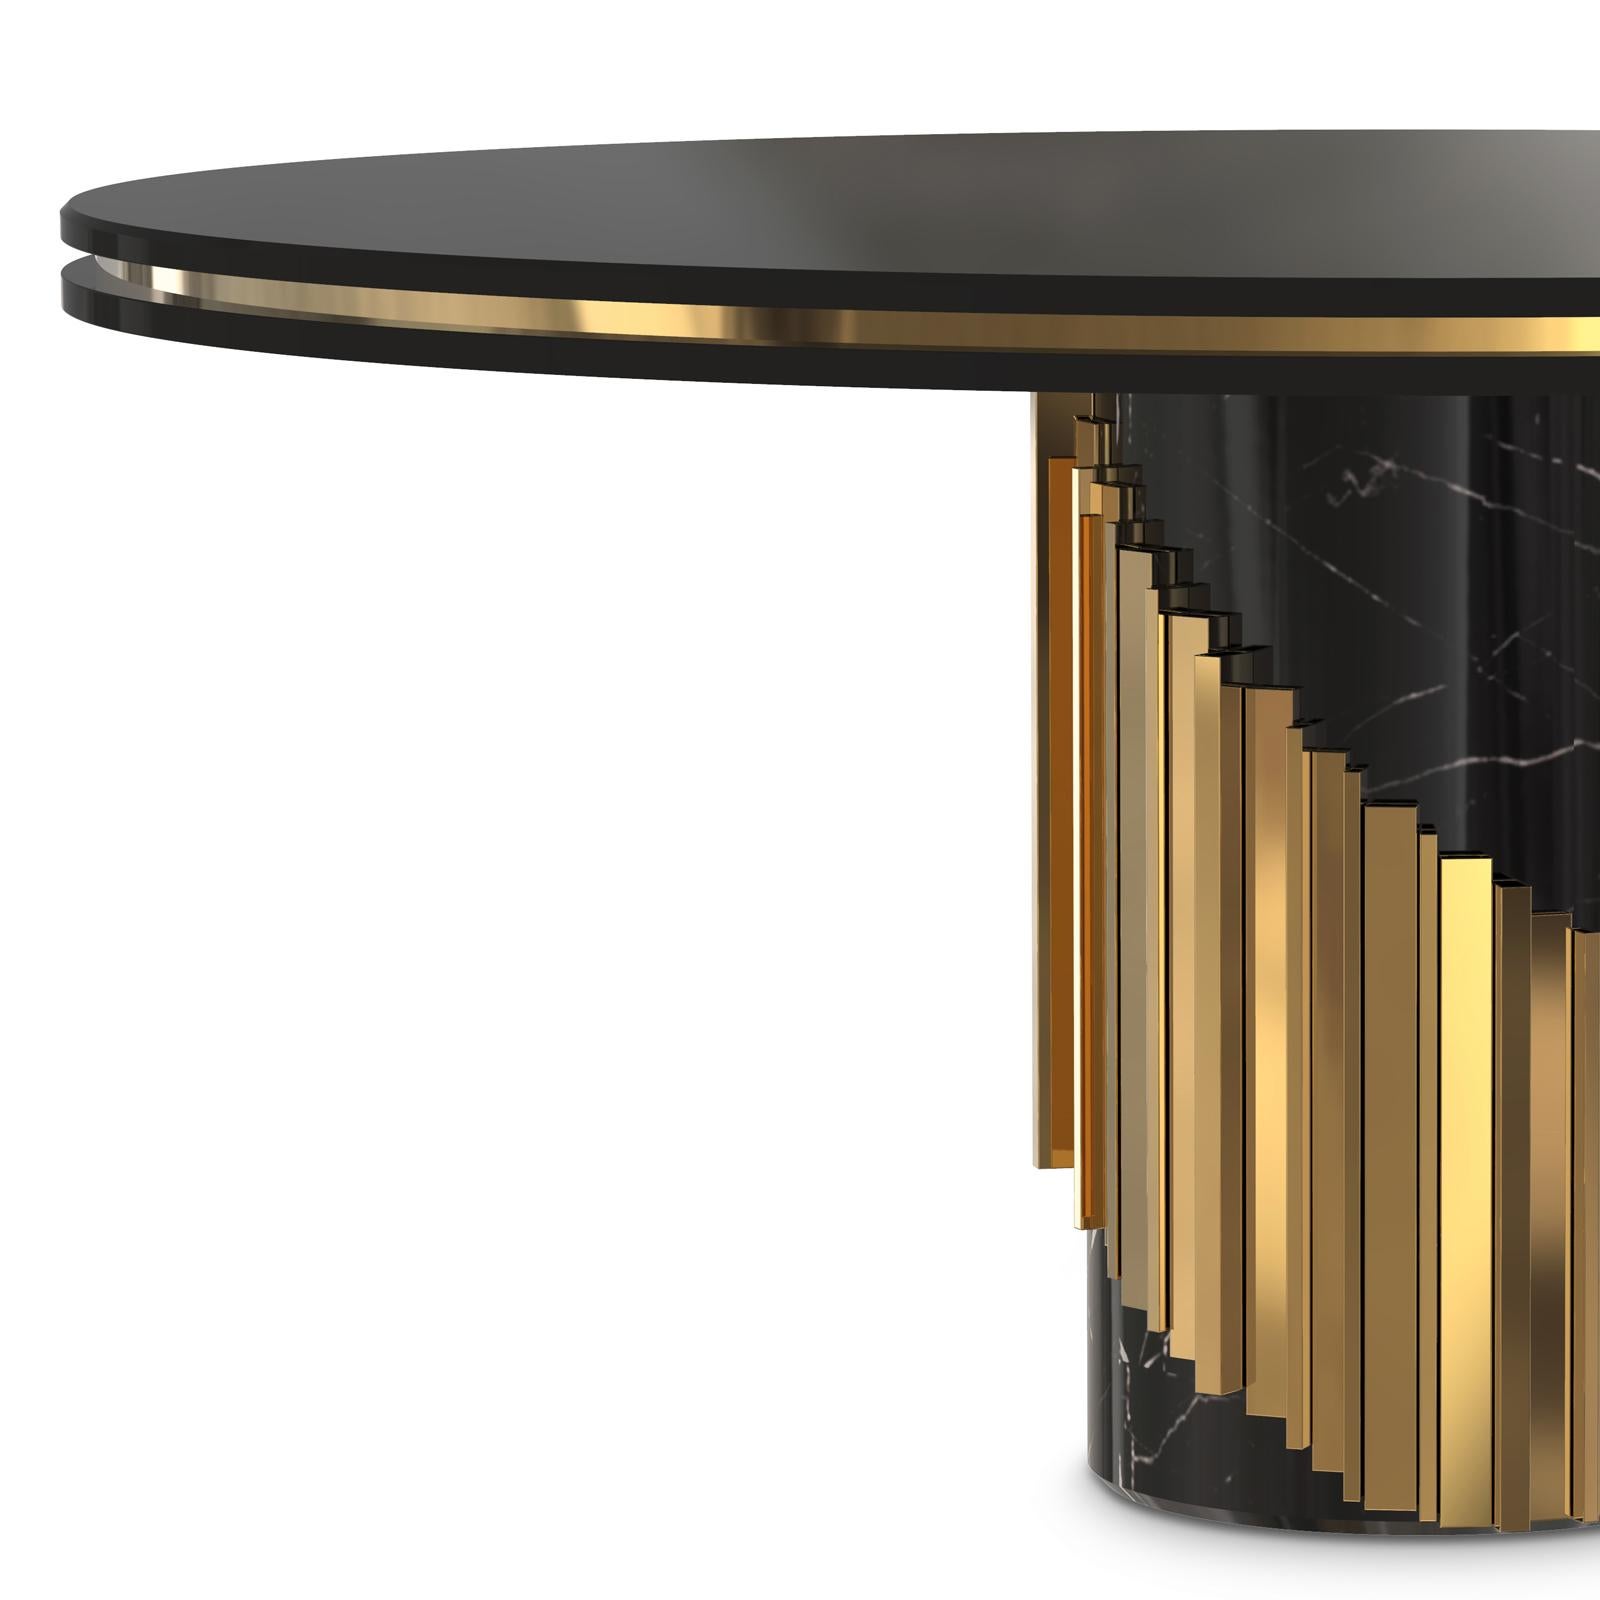 Tisch maxima rund mit schwarz lackierter Holzplatte
mit umlaufendem poliertem Messingrand. Auf schwarzem Marmorsockel
mit polierten Messingstäben rund um den Sockel.